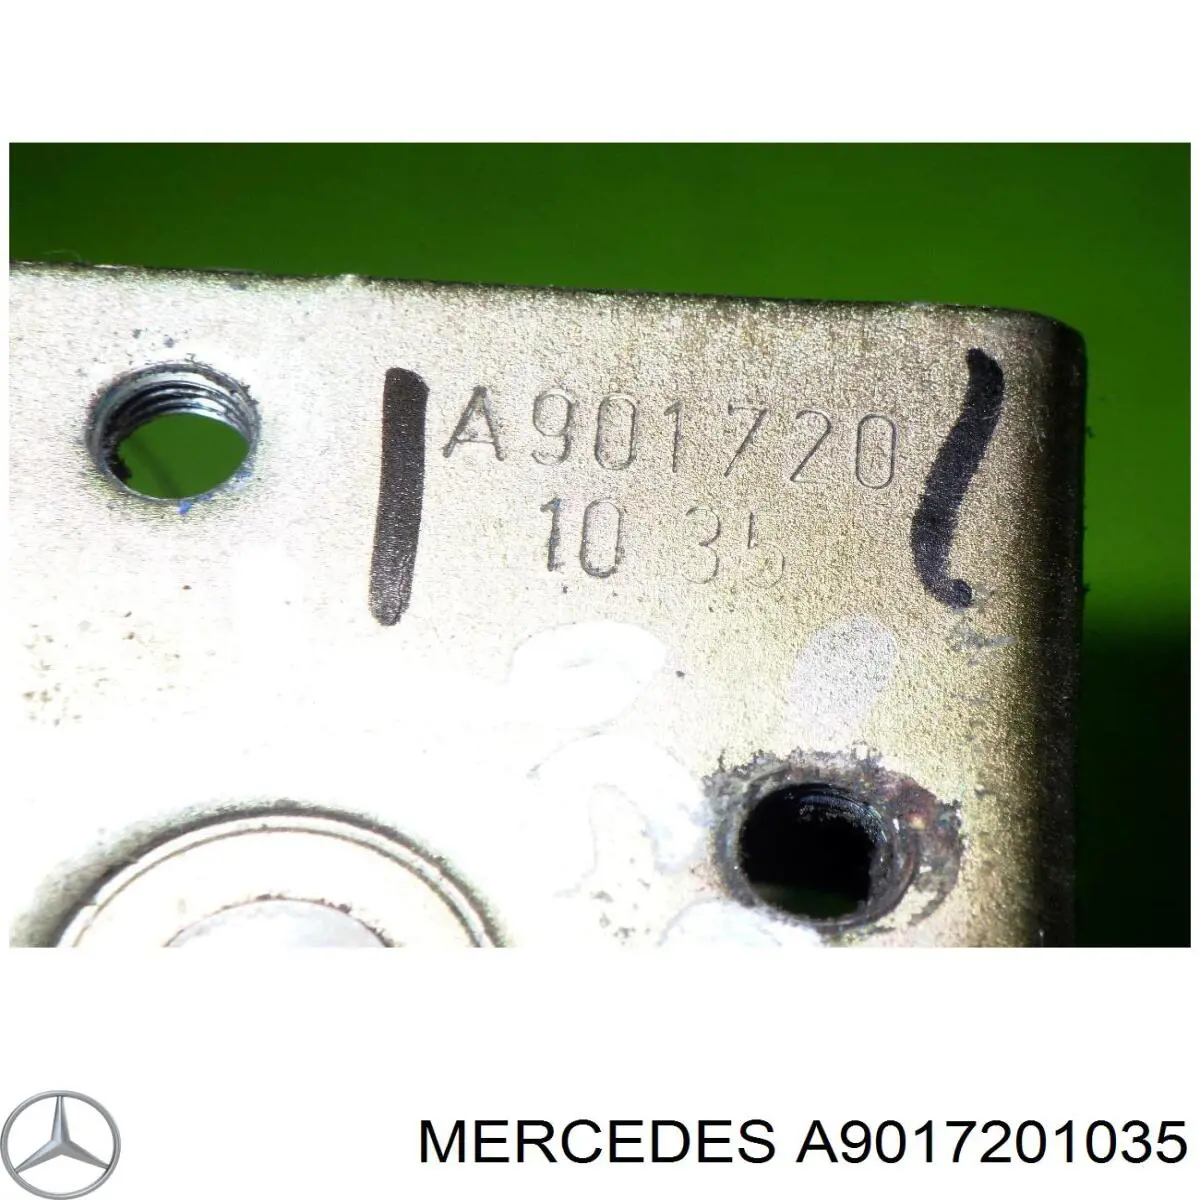 A9017201035 Mercedes cerradura de puerta delantera izquierda